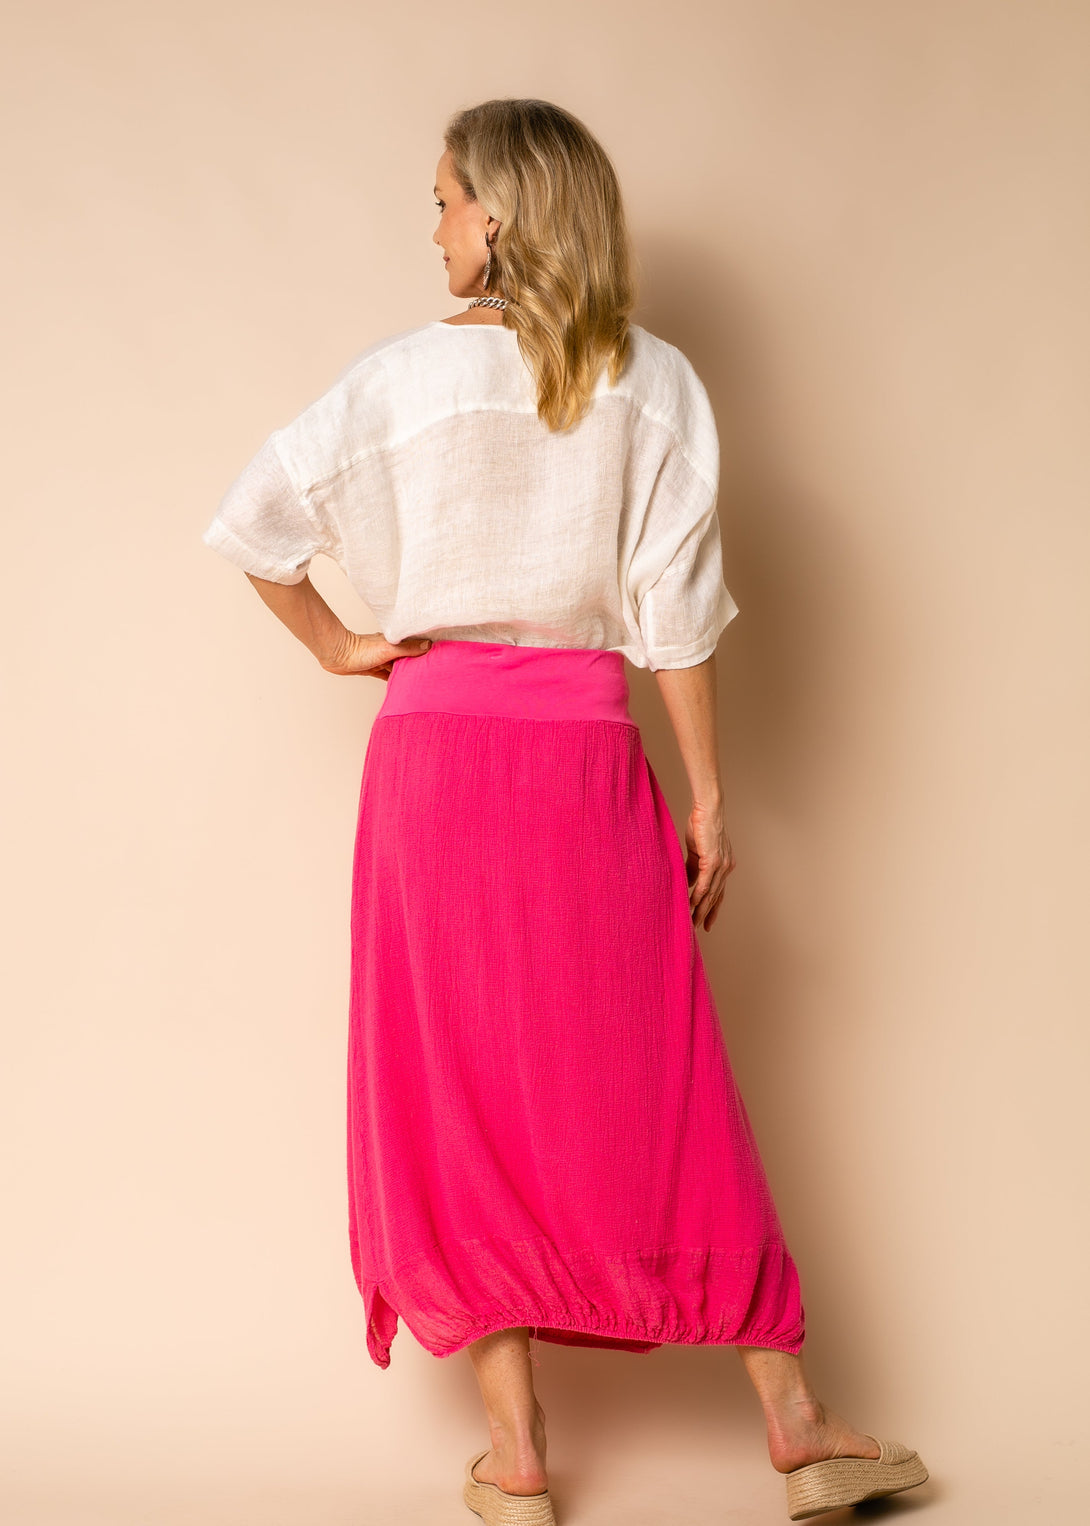 Leela Linen Skirt in Raspberry Sorbet - Imagine Fashion